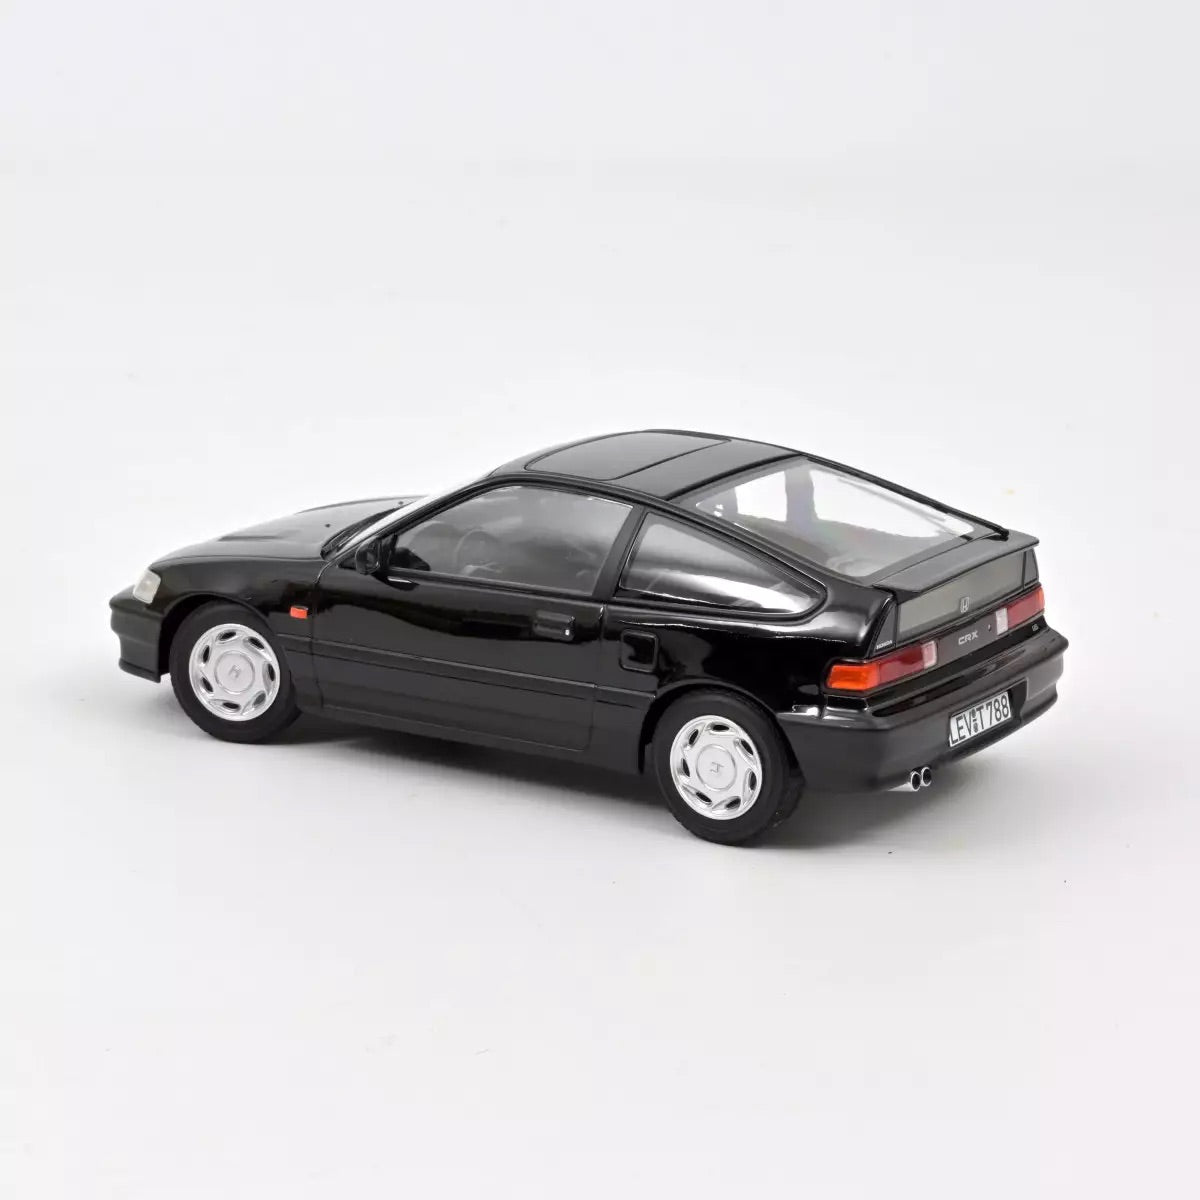 Norev 1990 Honda CRX Black 1:18